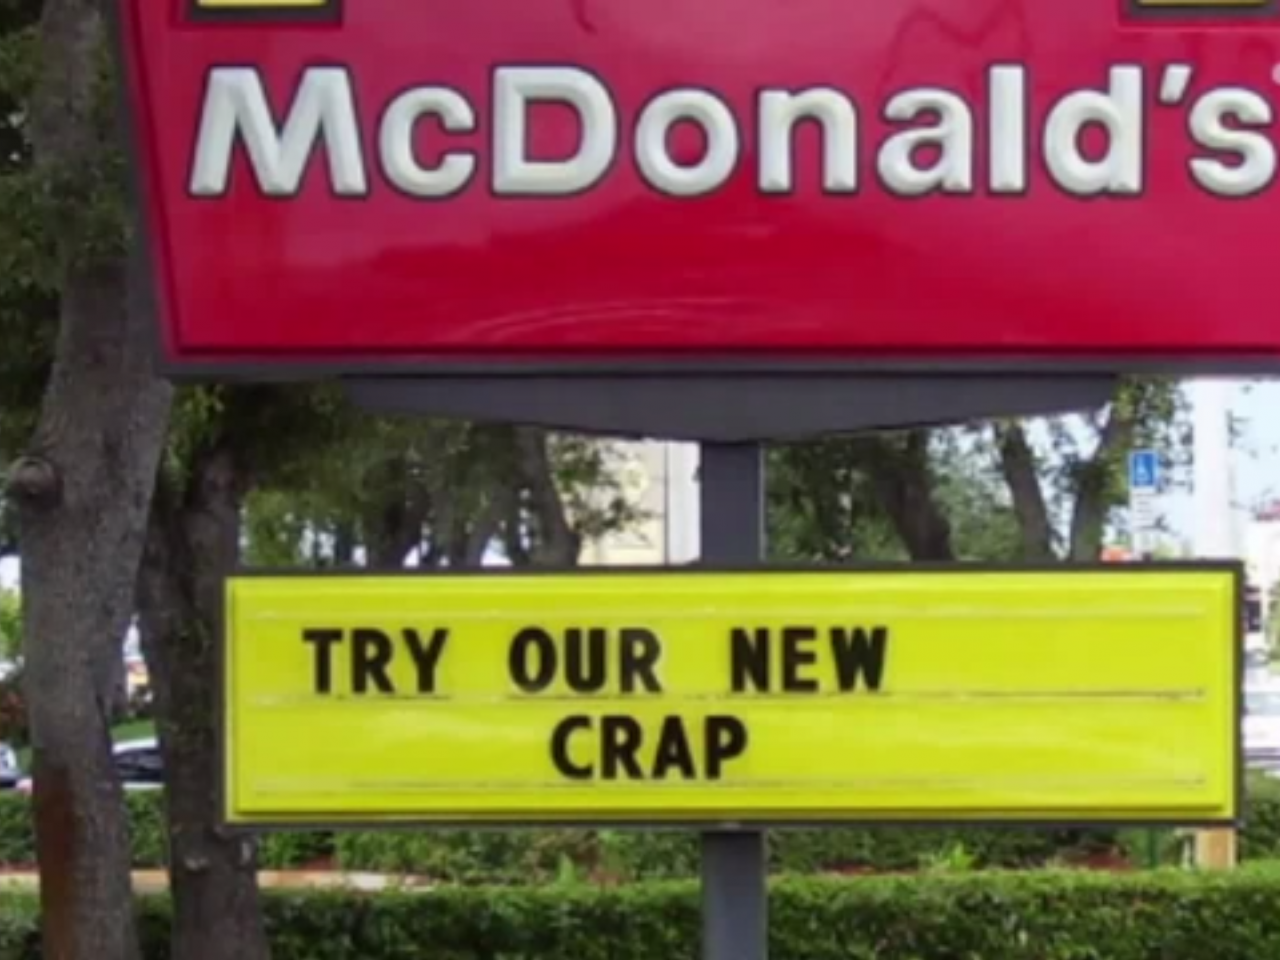 McDonaldsCrap